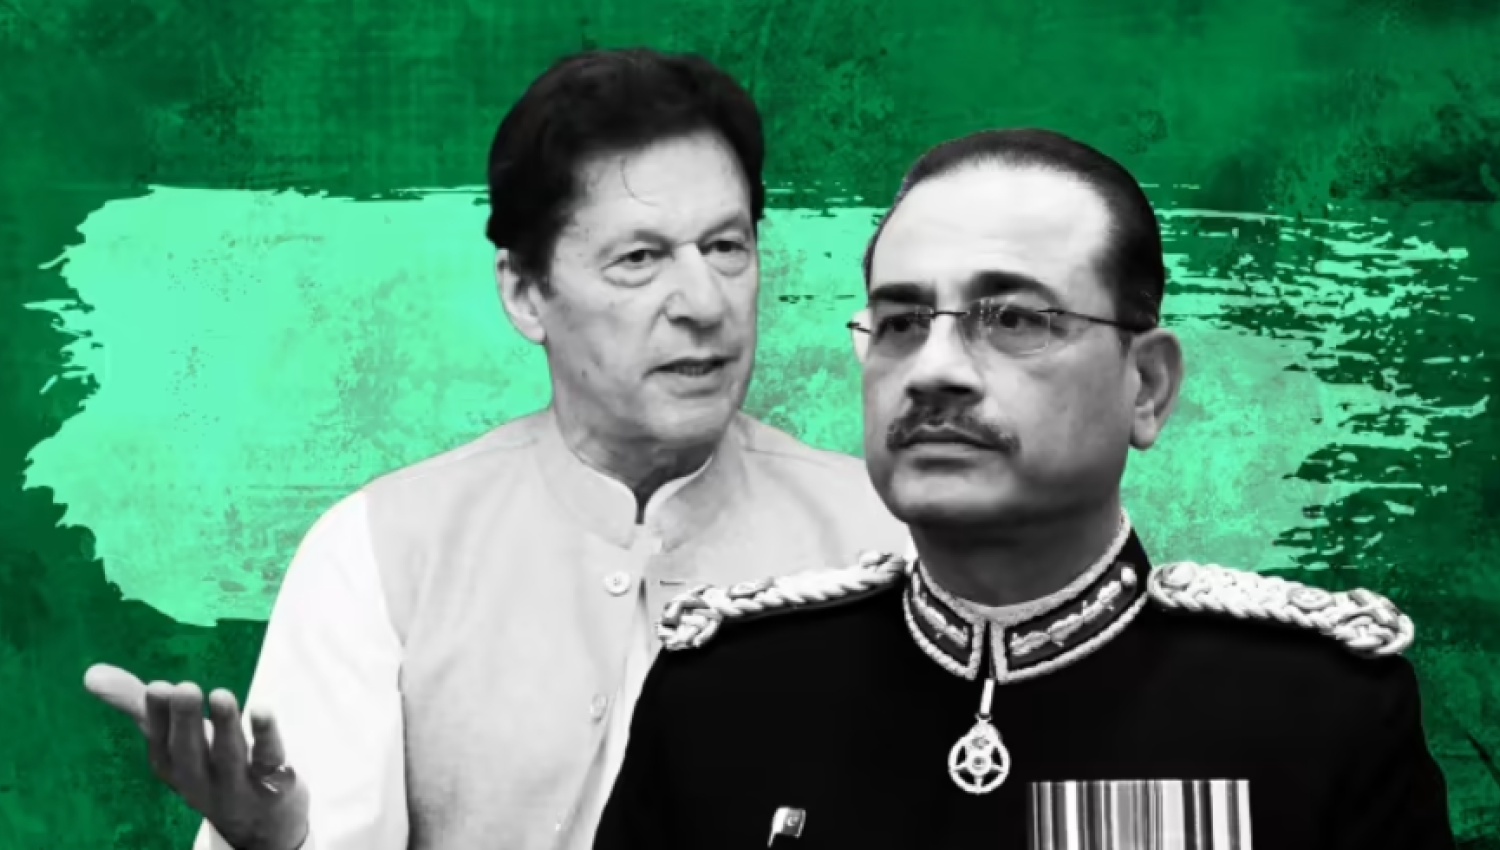 فورين بوليسي: حان الوقت لجنرالات باكستان أن يُوقفوا سيطرتهم على البلاد